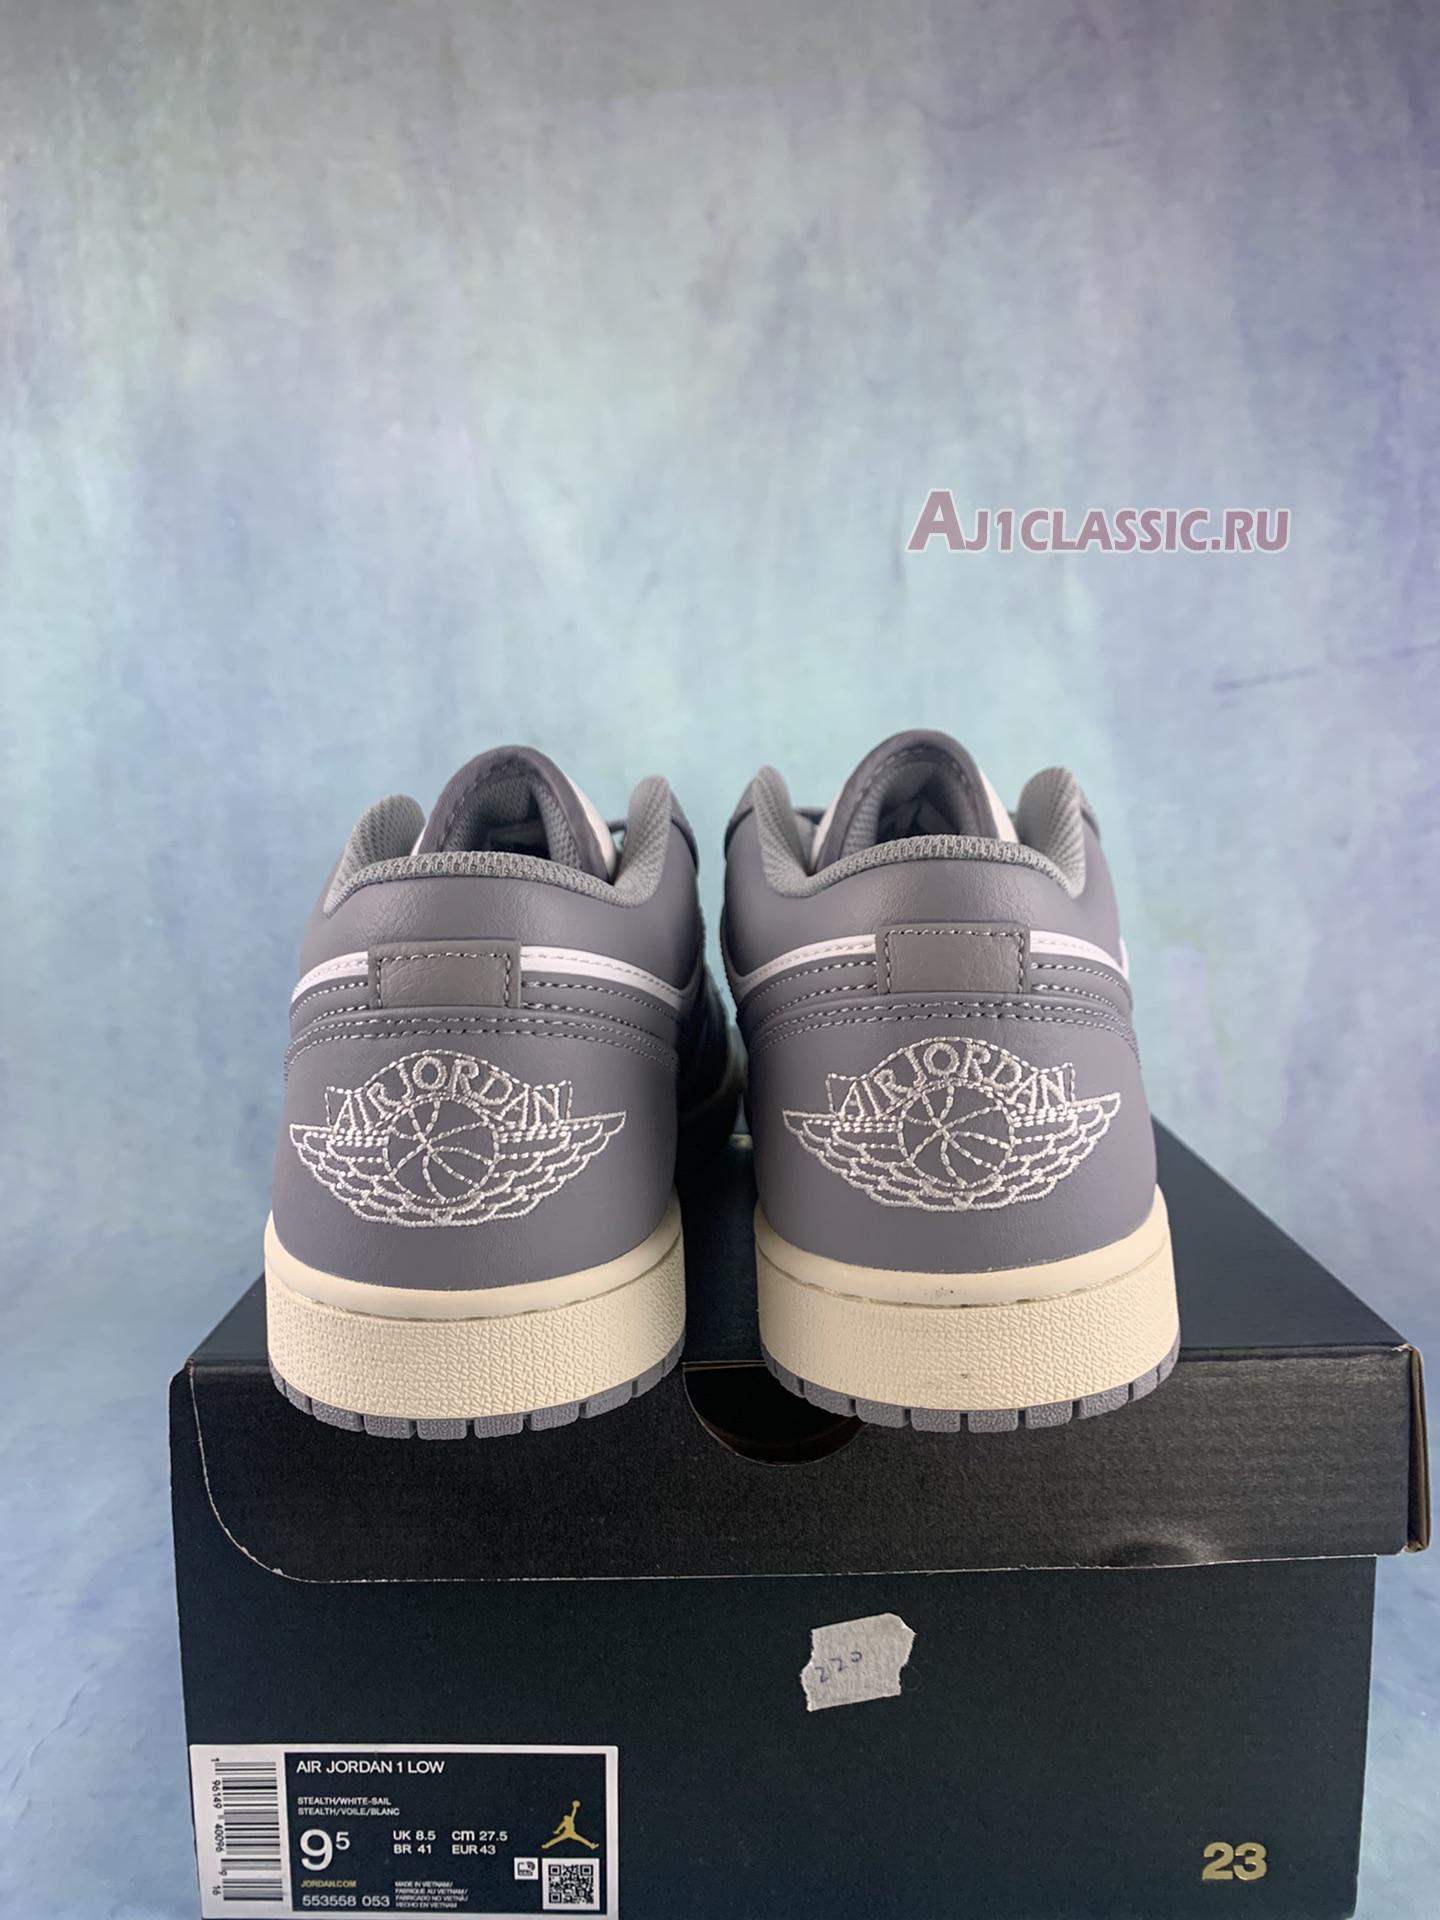 Air Jordan 1 Low "Vintage Grey" 553558-053